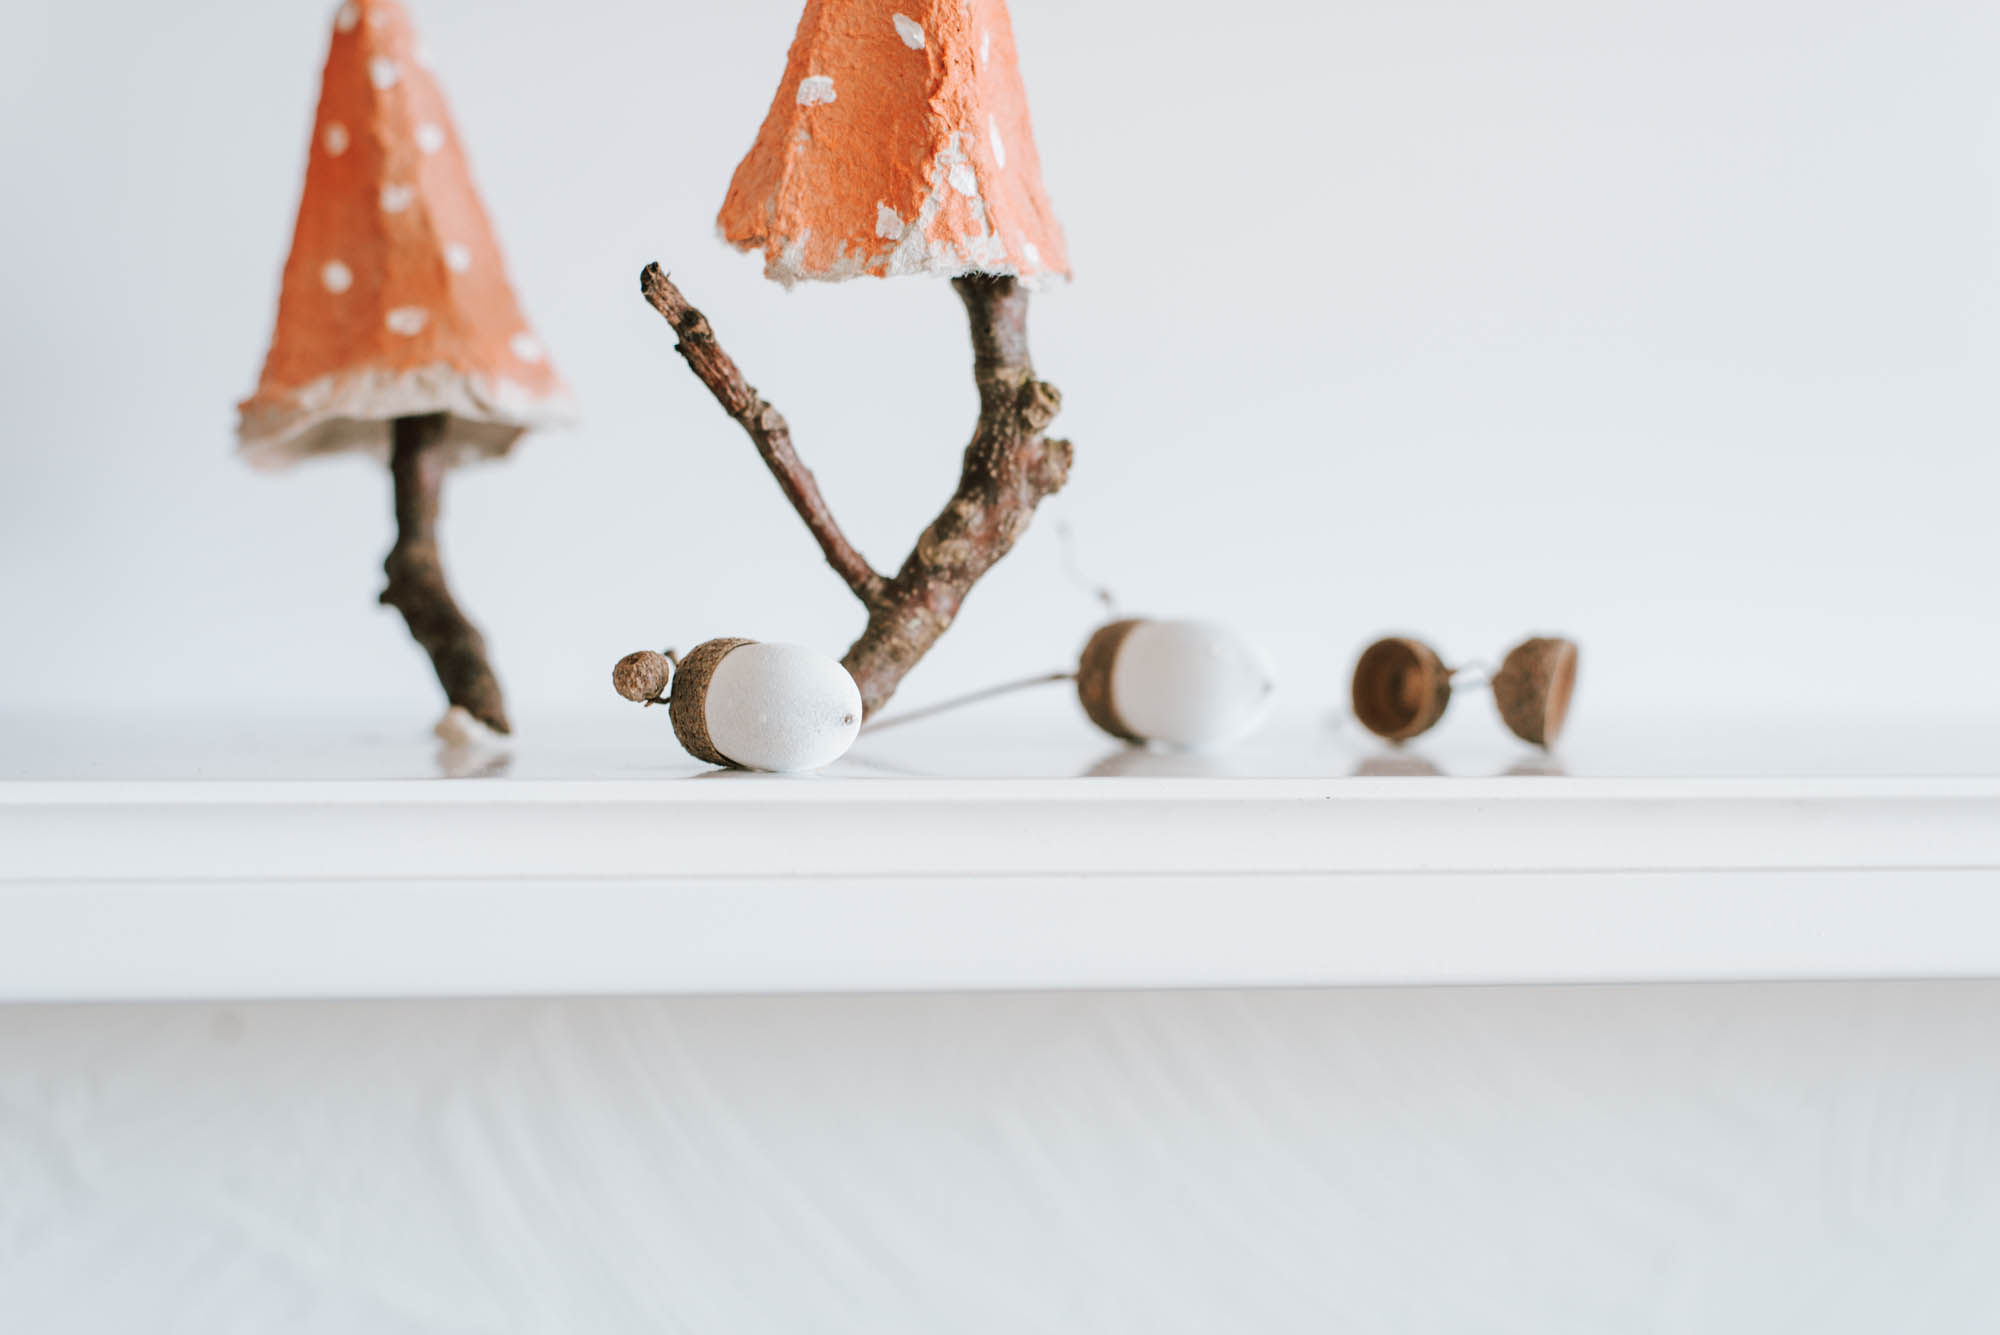 DIY Eicheln bemalen: Schöne Herbstdeko einfach selbermachen - DIY Idee für Kinder. Nachhaltige Deko aus Naturmaterialien zum dekorieren